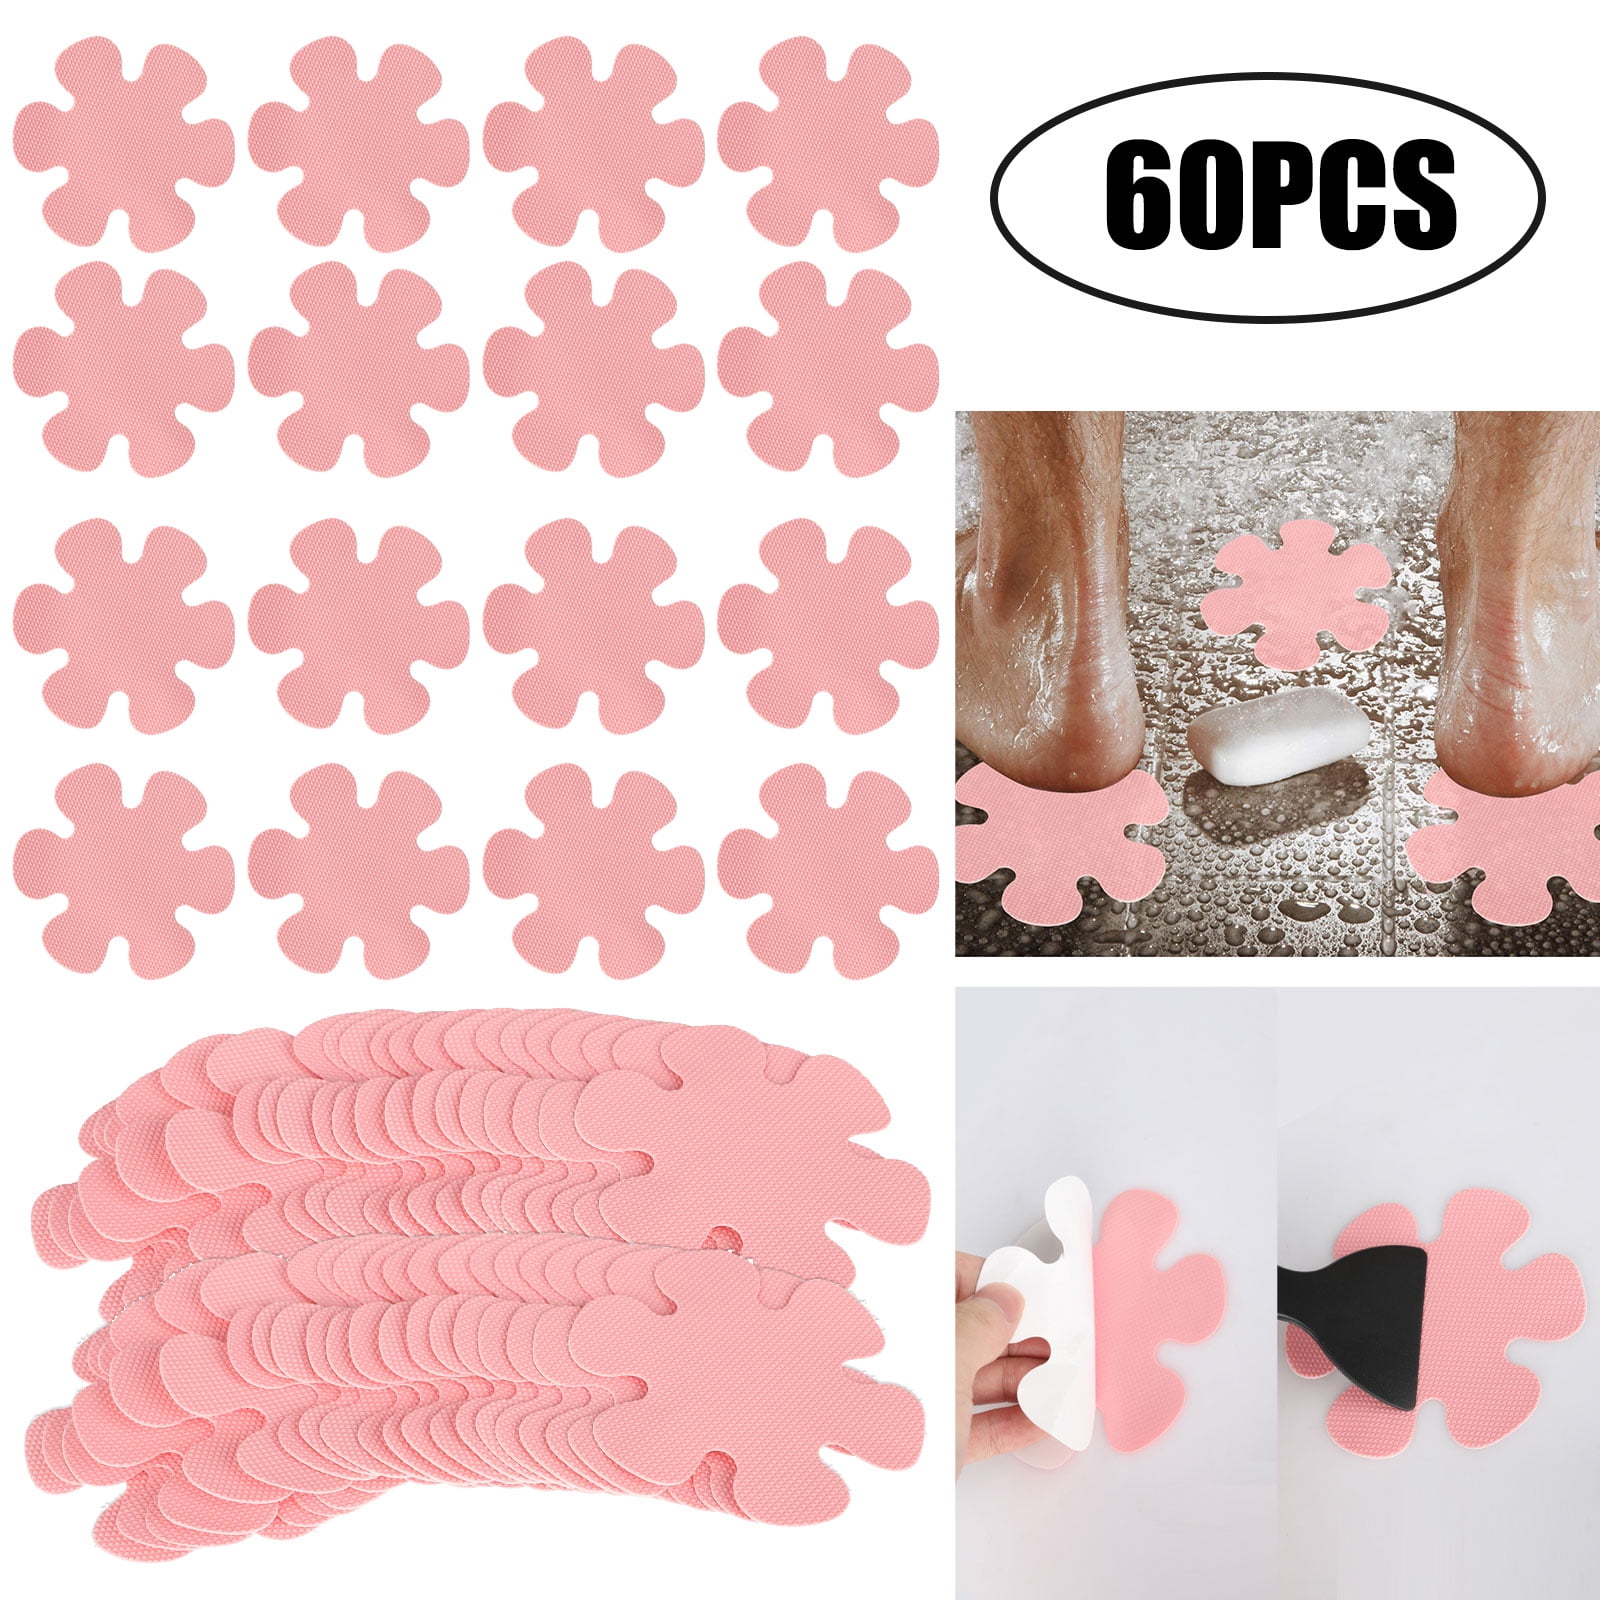 20pcs Anti Slip Flower Non-Slip Decals Safety Bath Tub Shower Grip Stickers 10cm 